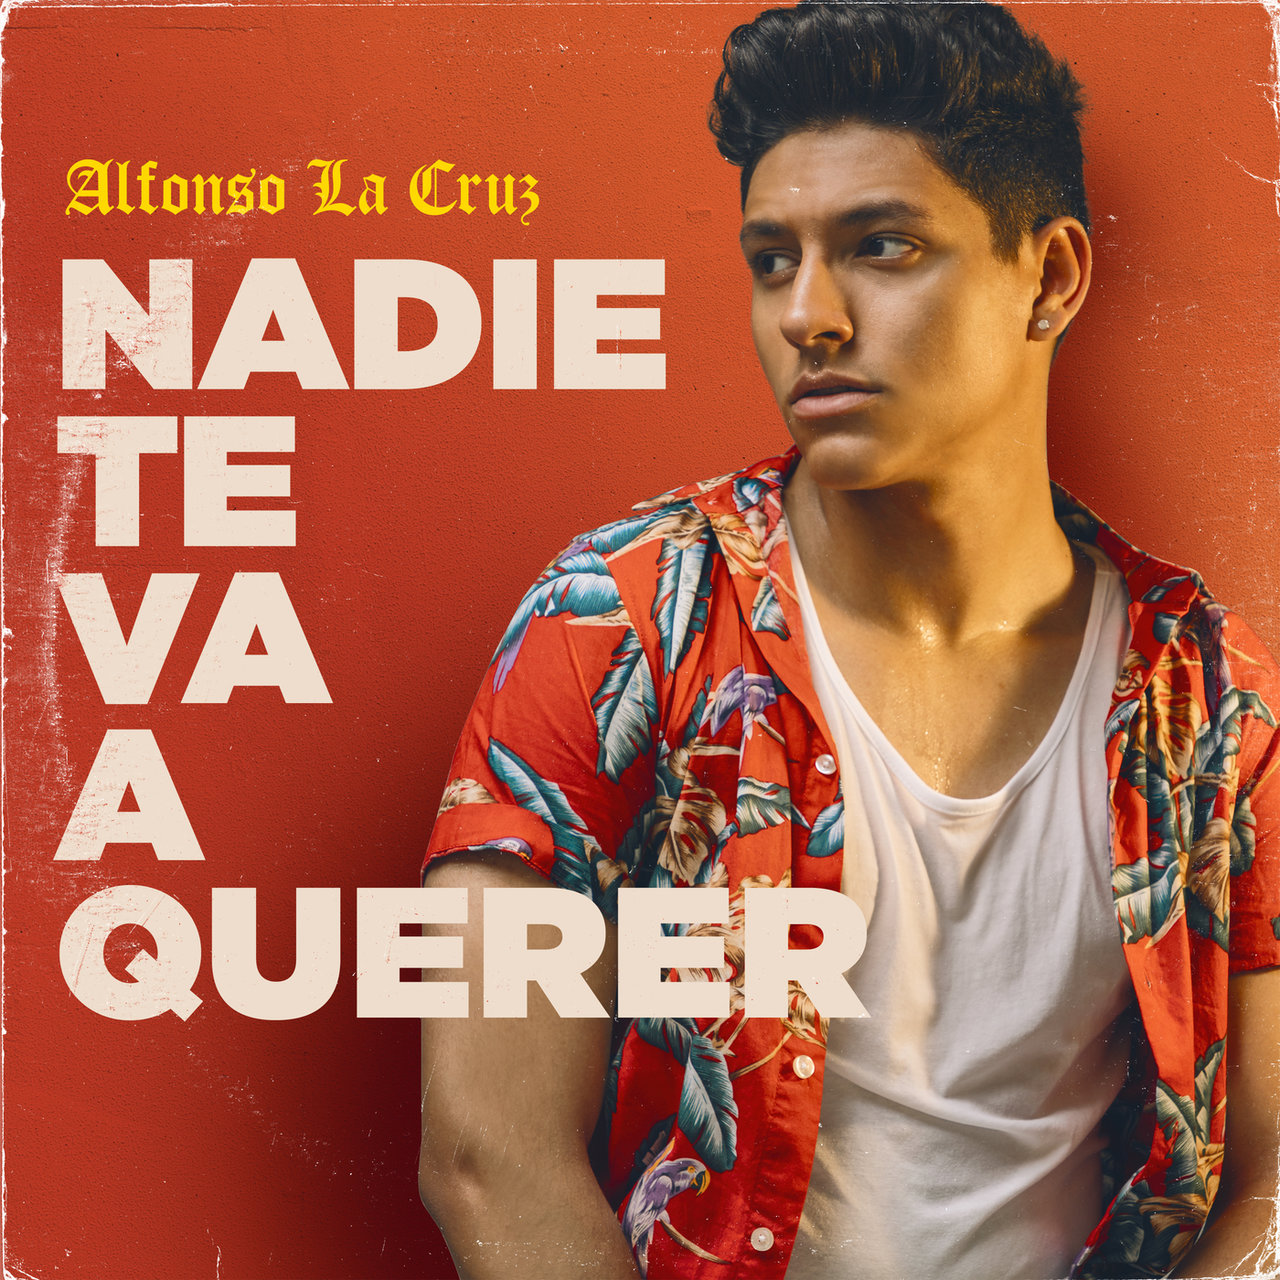 Alfonso La Cruz — Nadie Te Va A Querer cover artwork